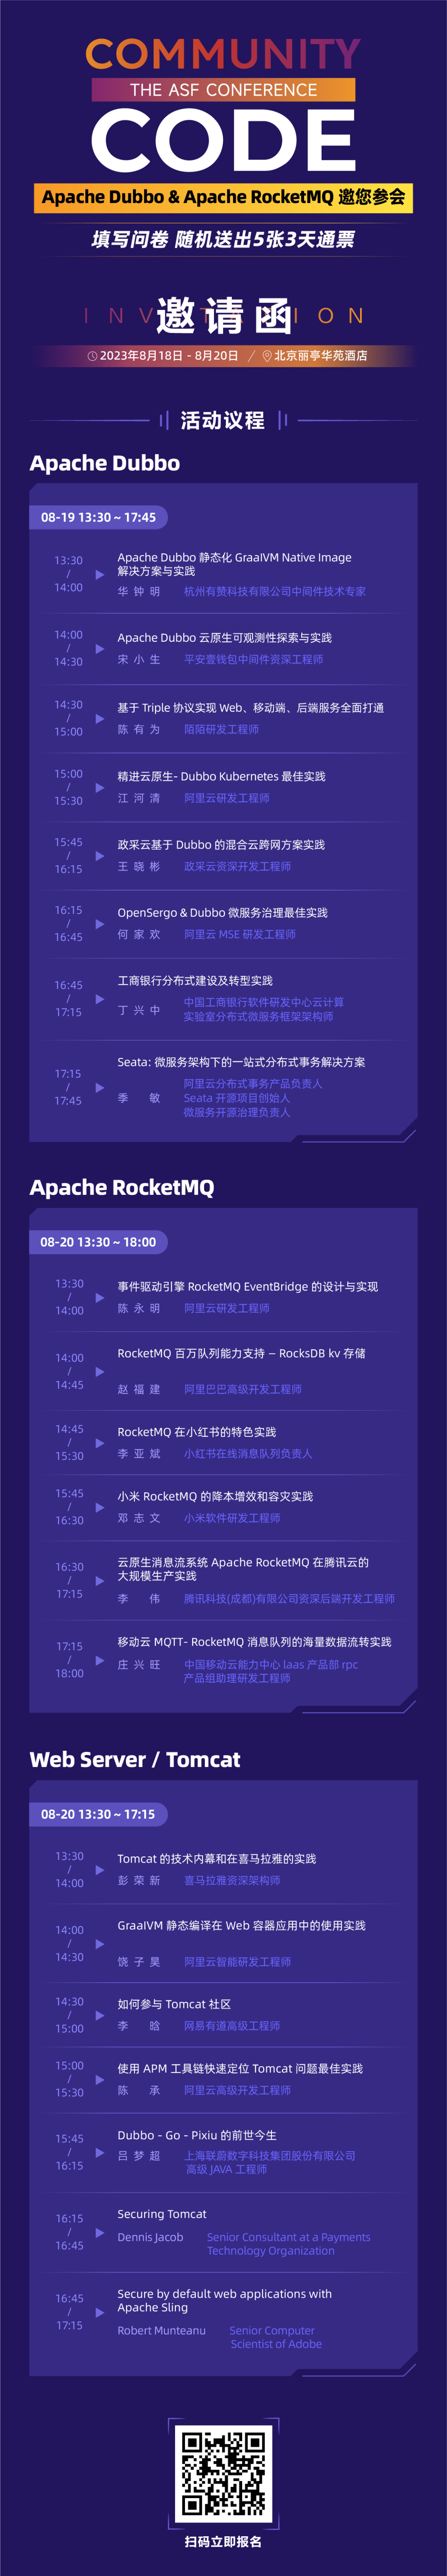 Apache Dubbo 和 Apache RocketMQ 邀您参与，ASF 亚洲峰会 5 张门票免费送